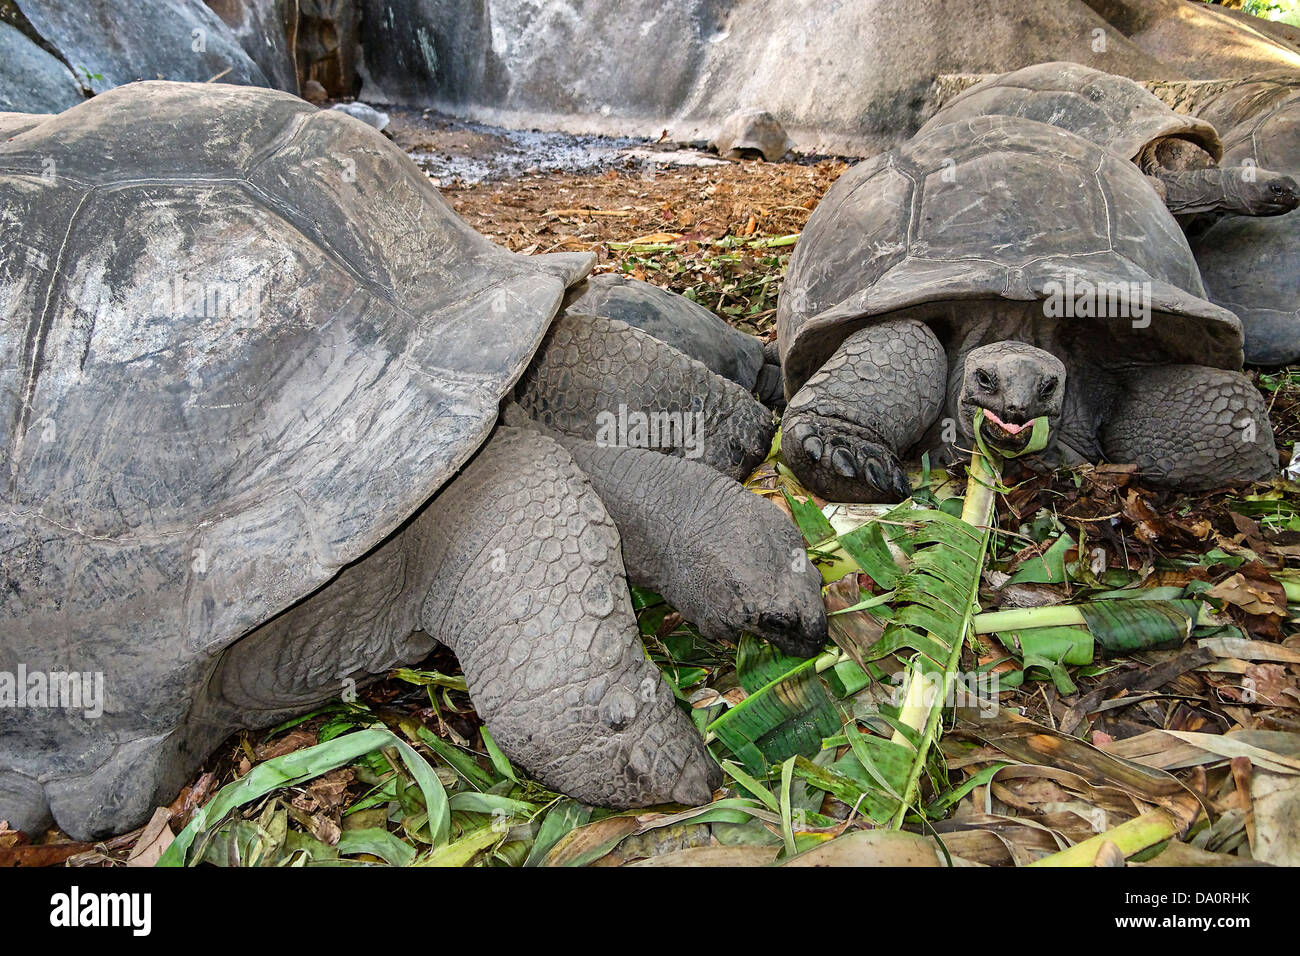 L'accouplement des tortues à l'Union européenne Plantation, l'île de La Digue, Seychelles Banque D'Images